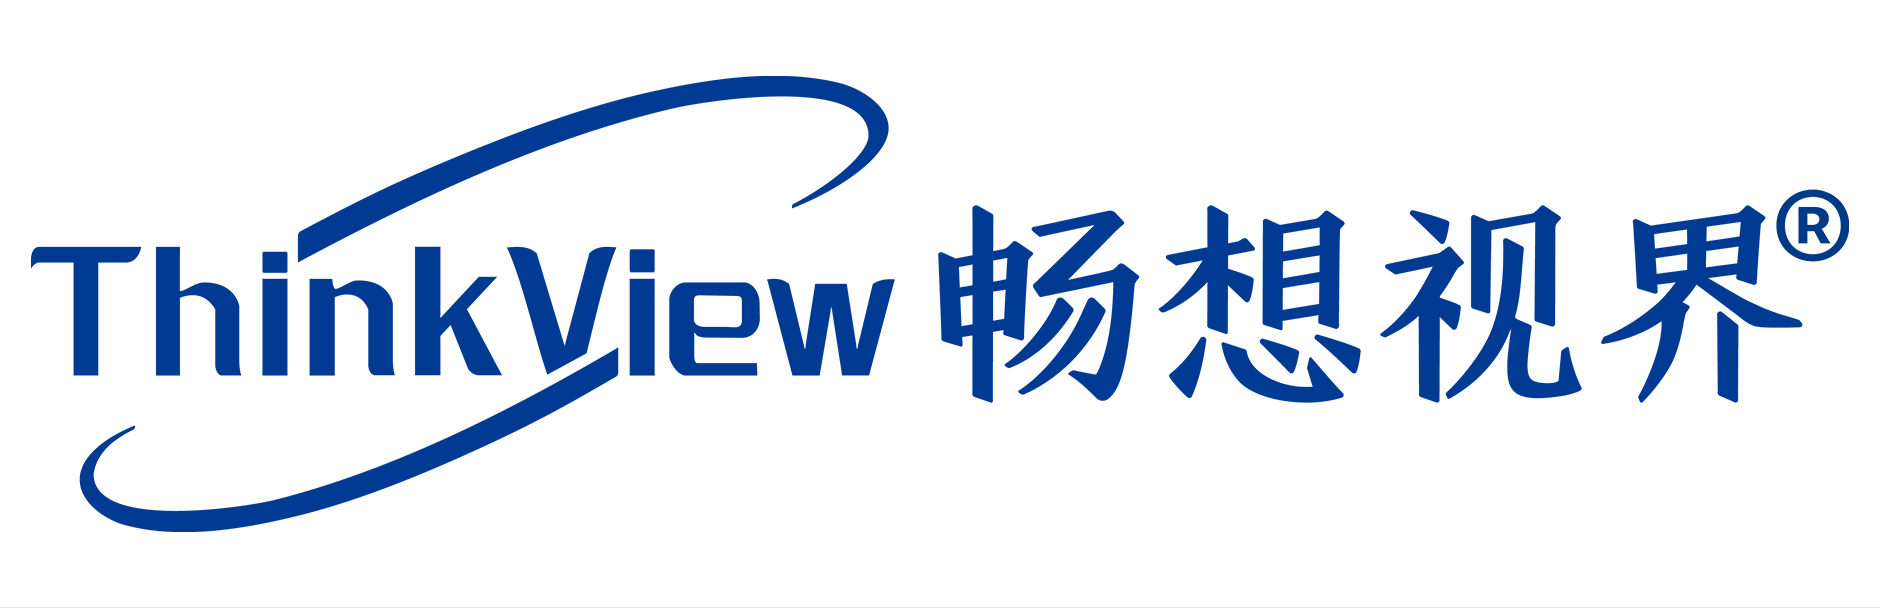 Shenzhen ThinkView Technology Co., Ltd.